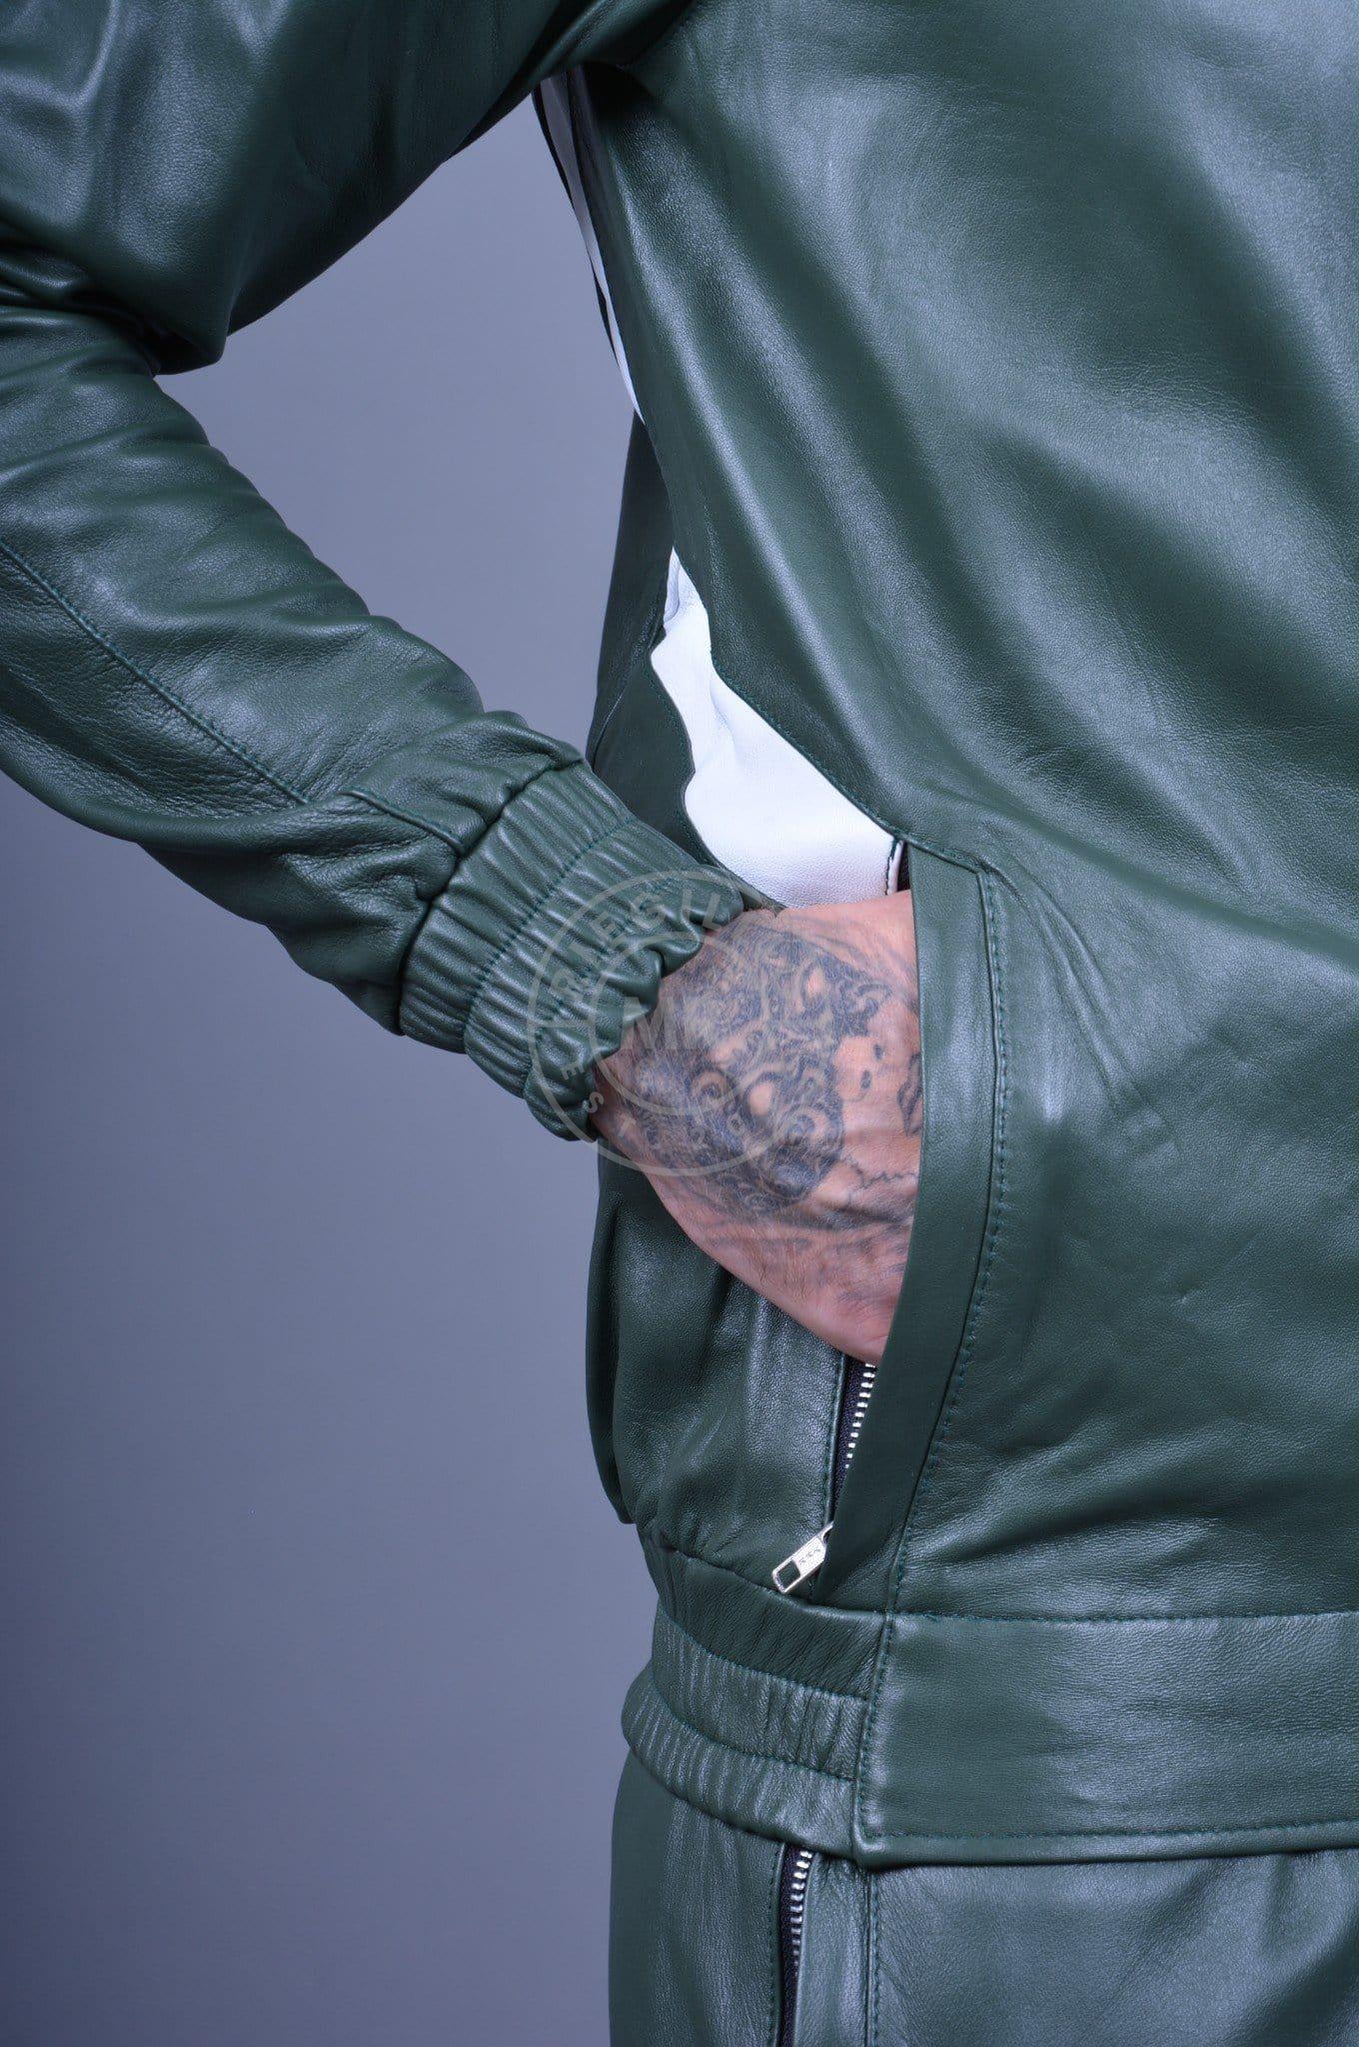 Leather Bomber Jackets : Buy Online - Happy Gentleman